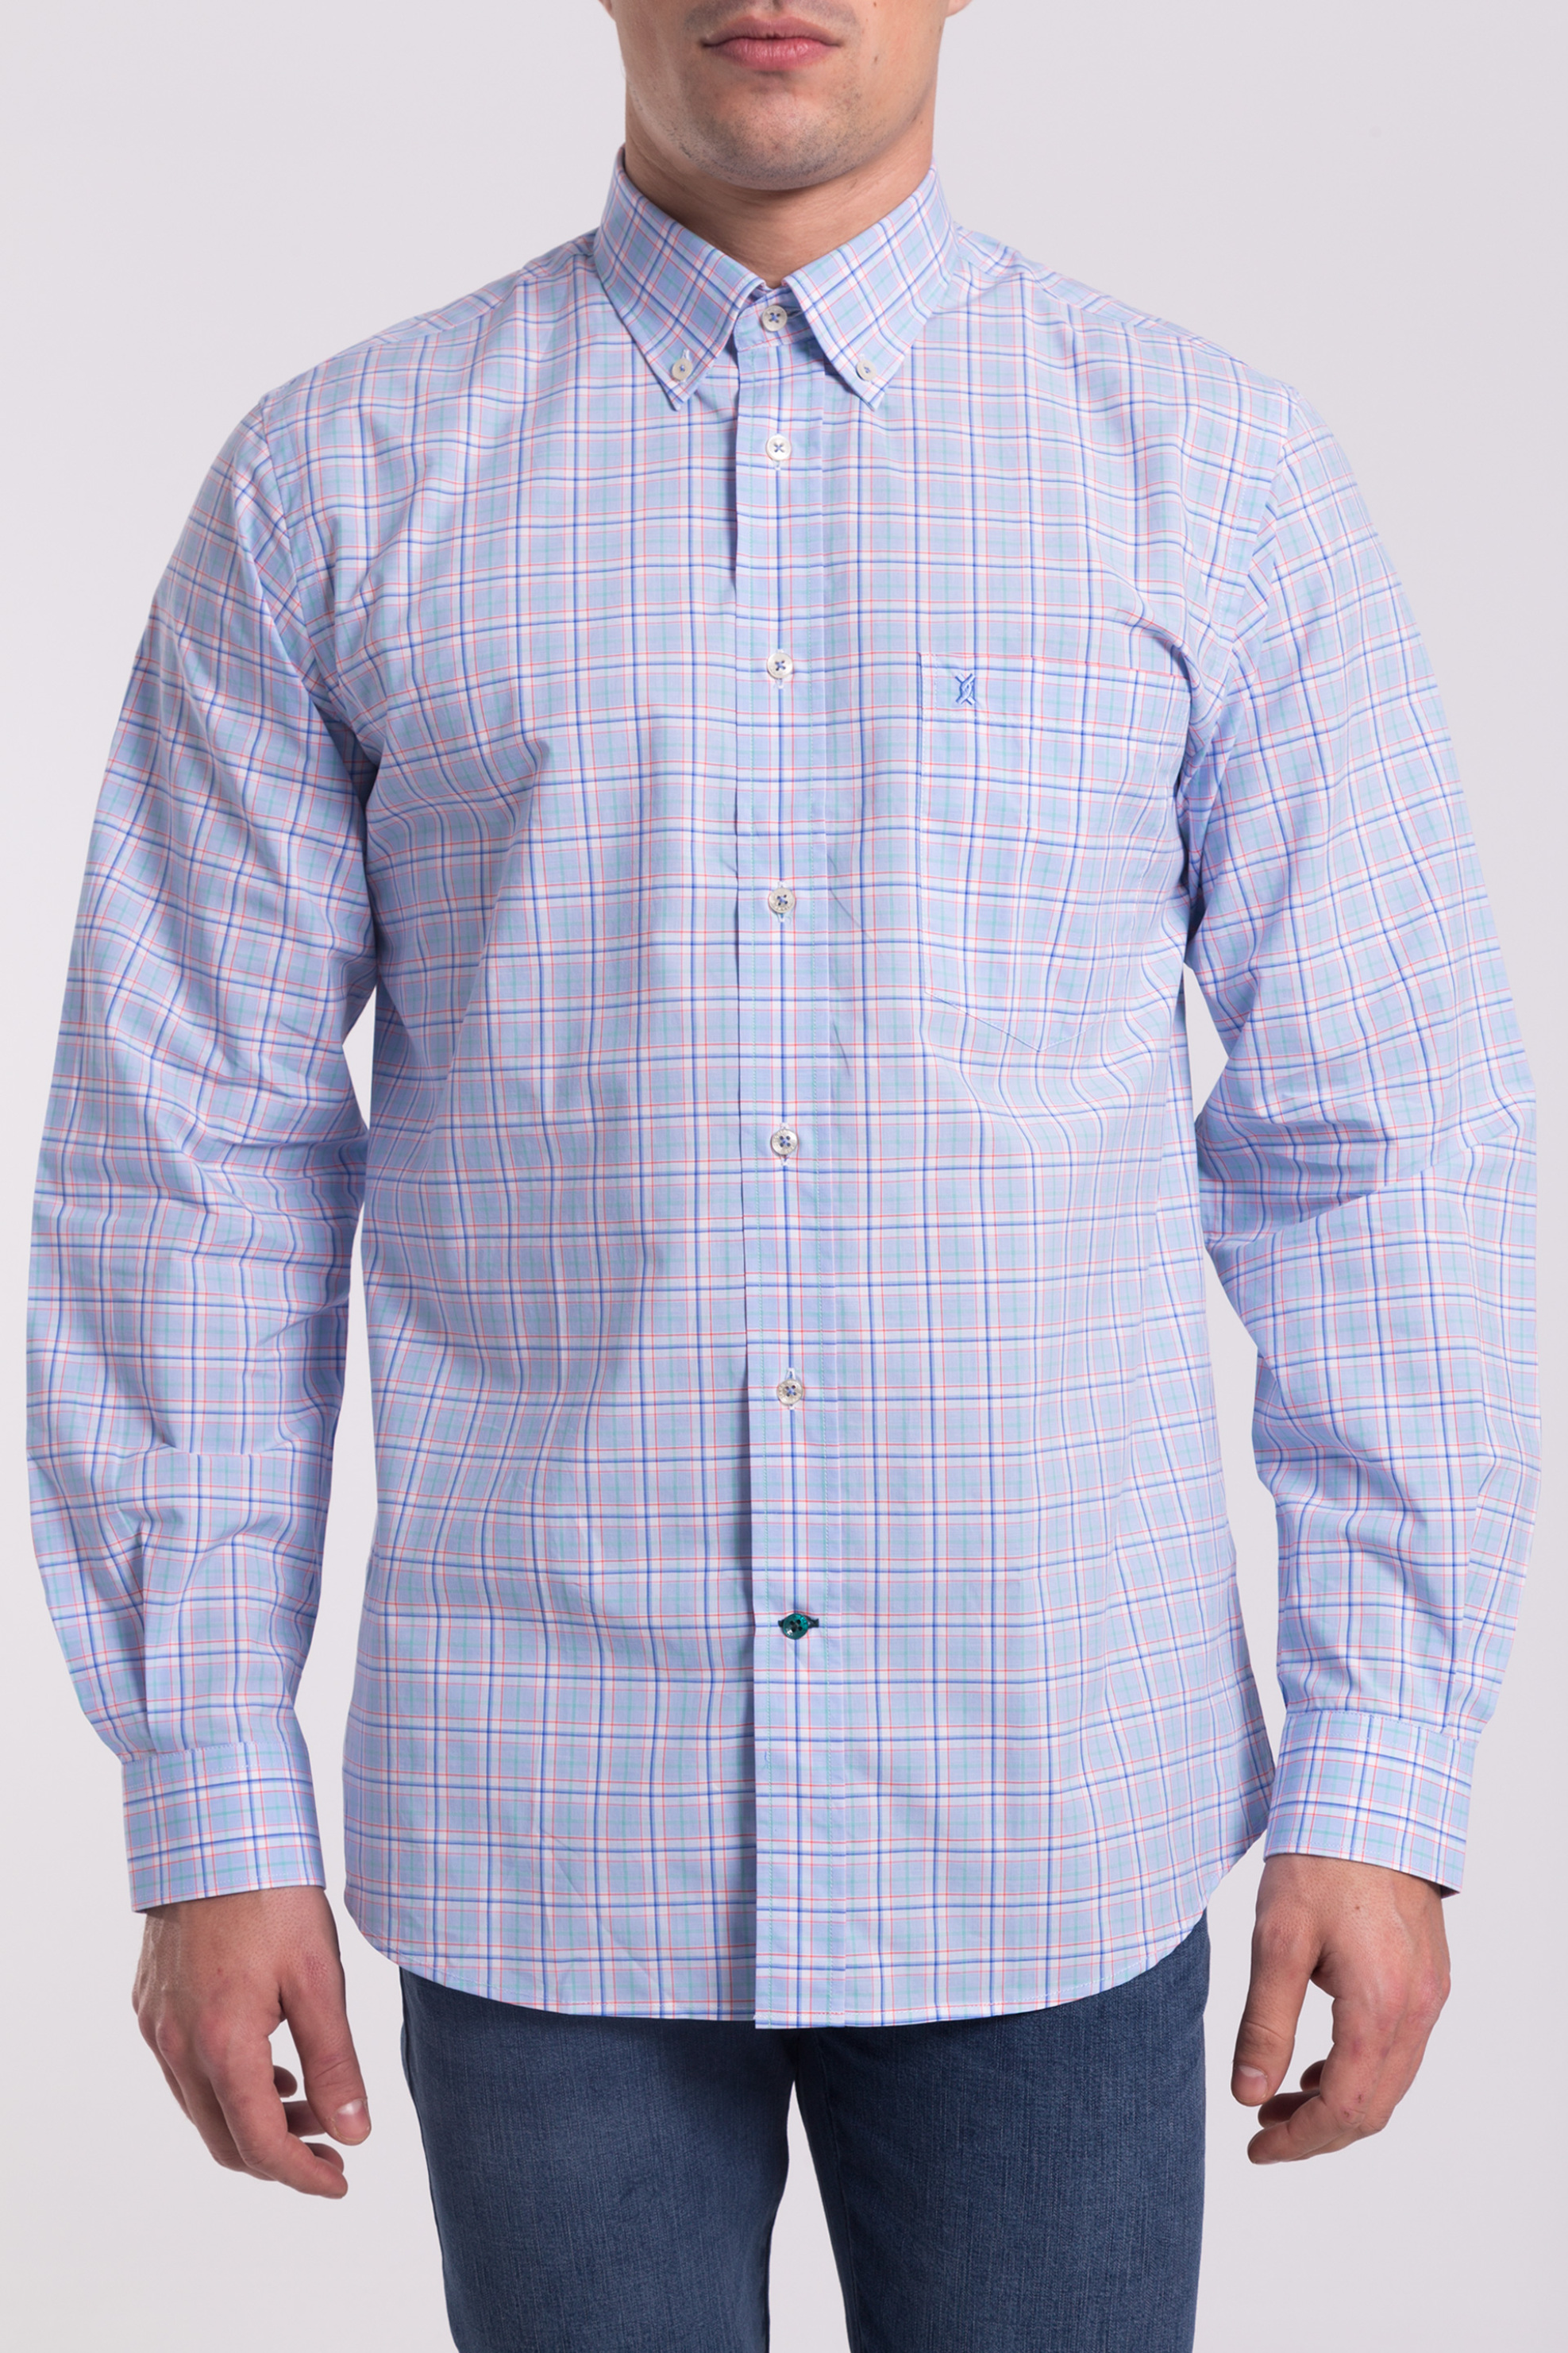 Άνδρας Ανδρικό καρό πουκάμισο με το τελευταίο κουμπί σε αντίθεση The Bostonians - AACH7206 Γαλάζιο